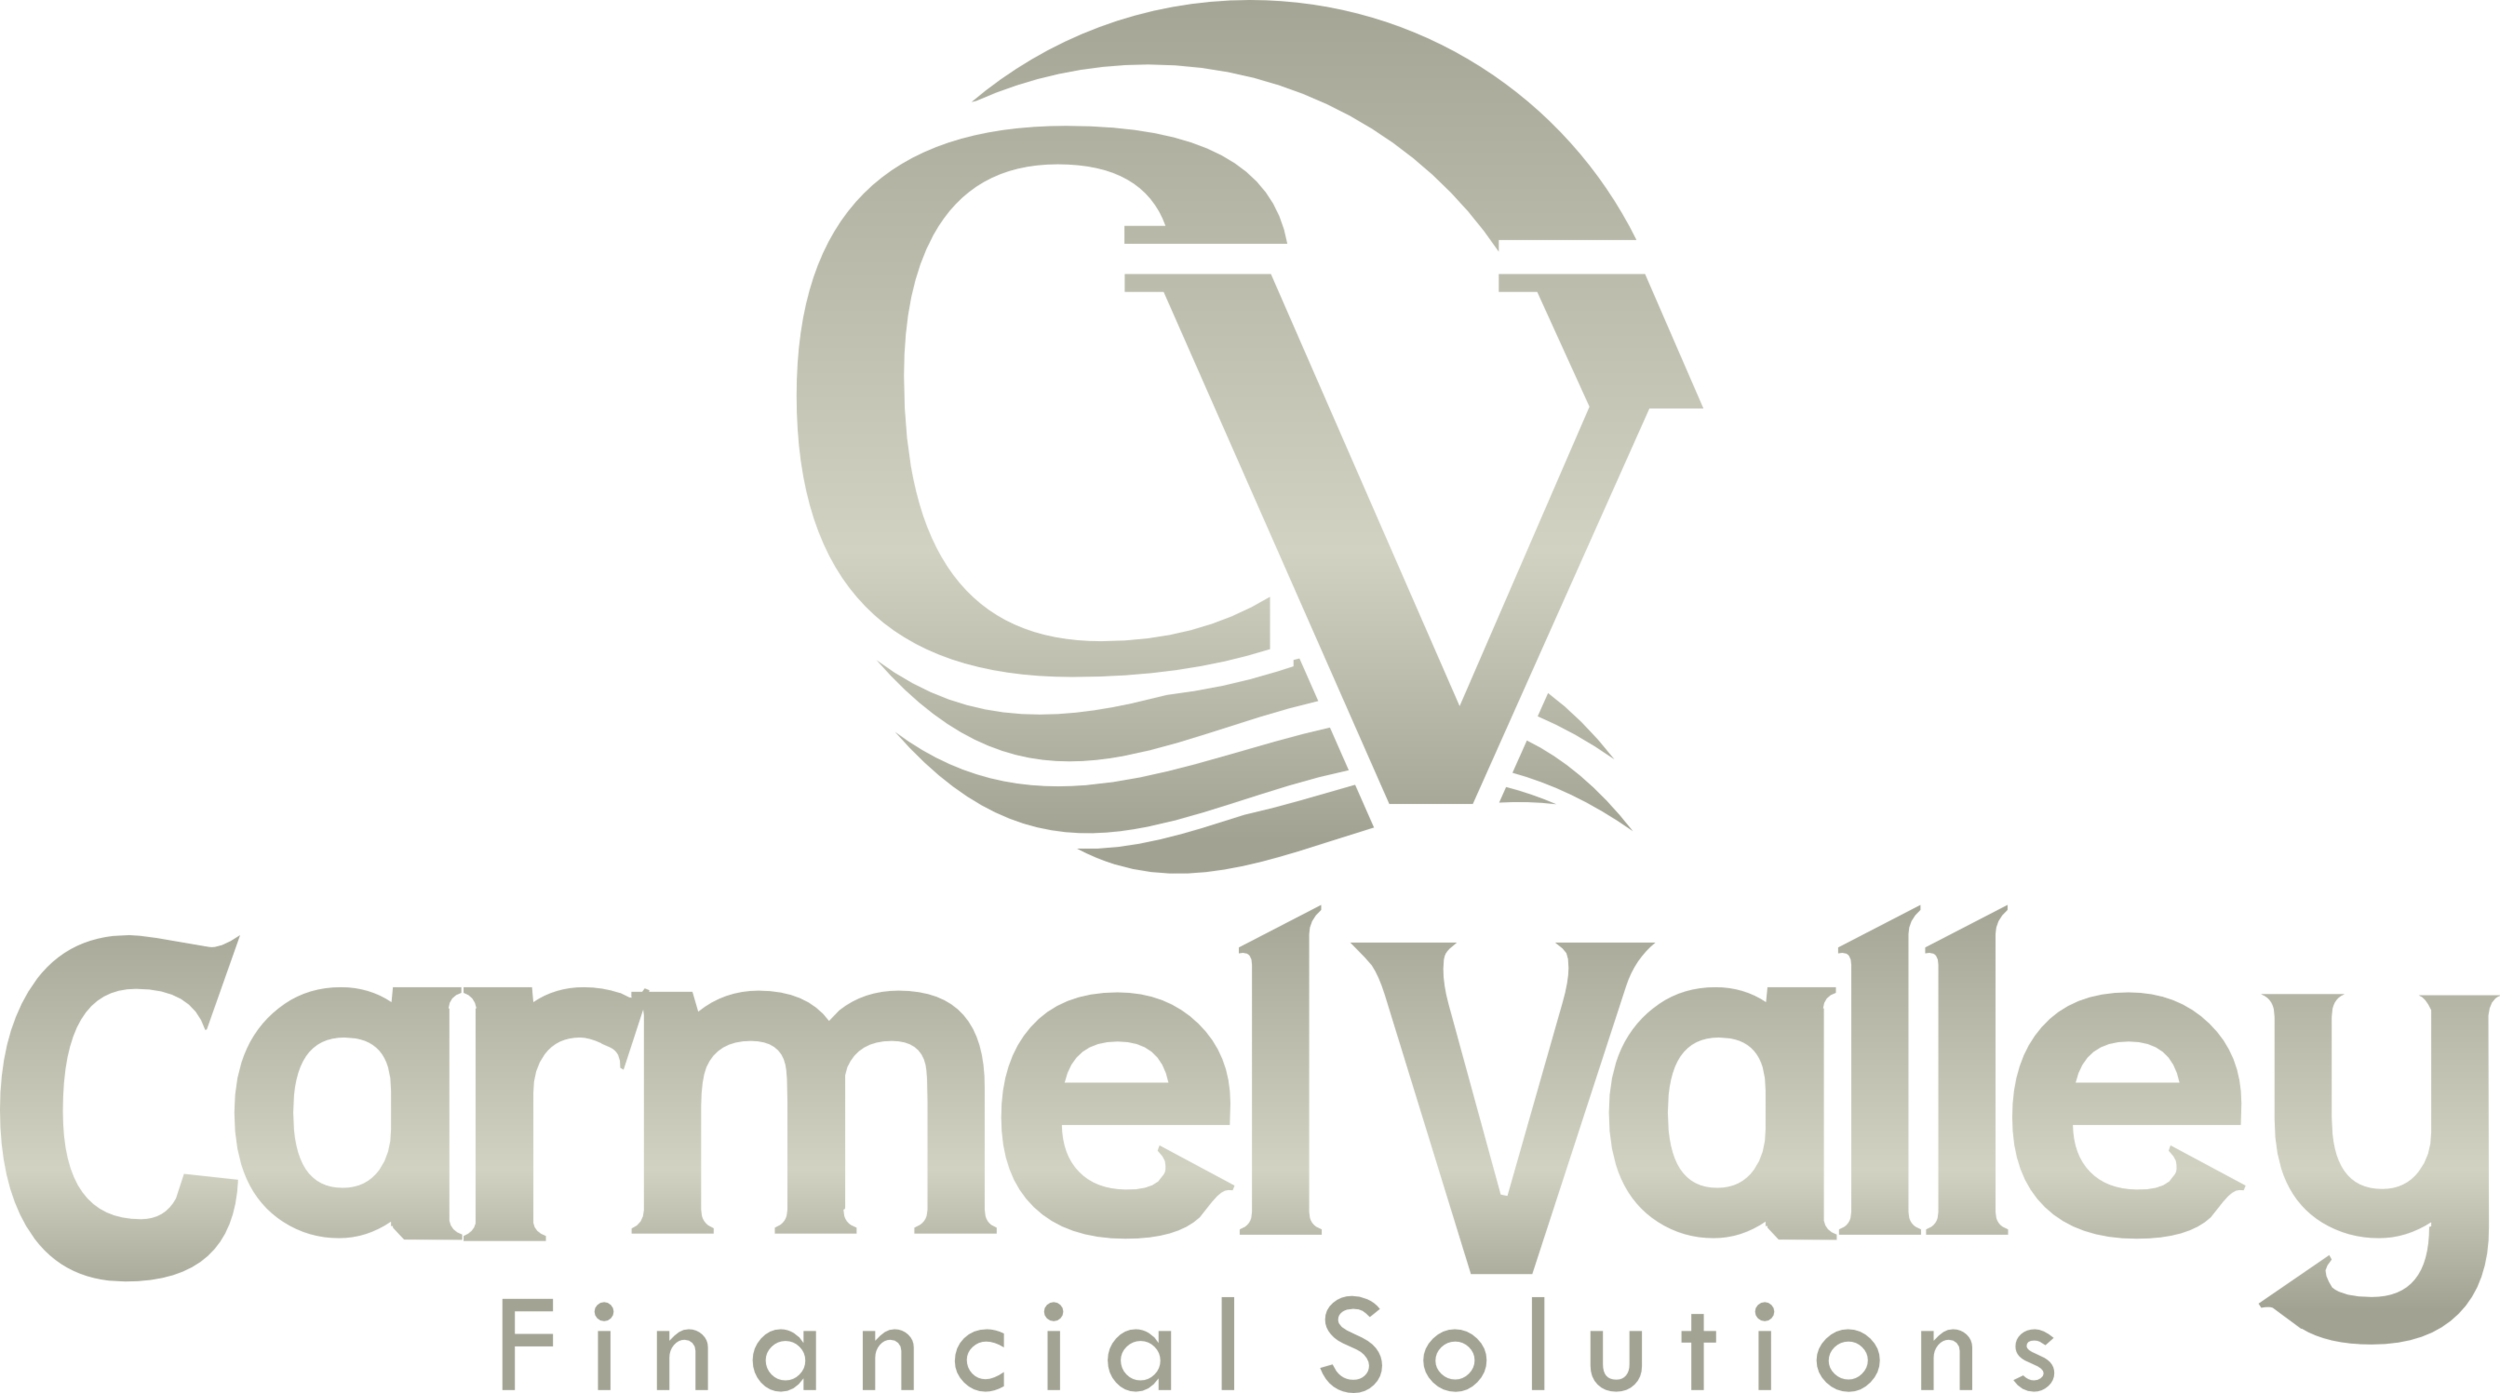 Carmel Valley Financial Solutions